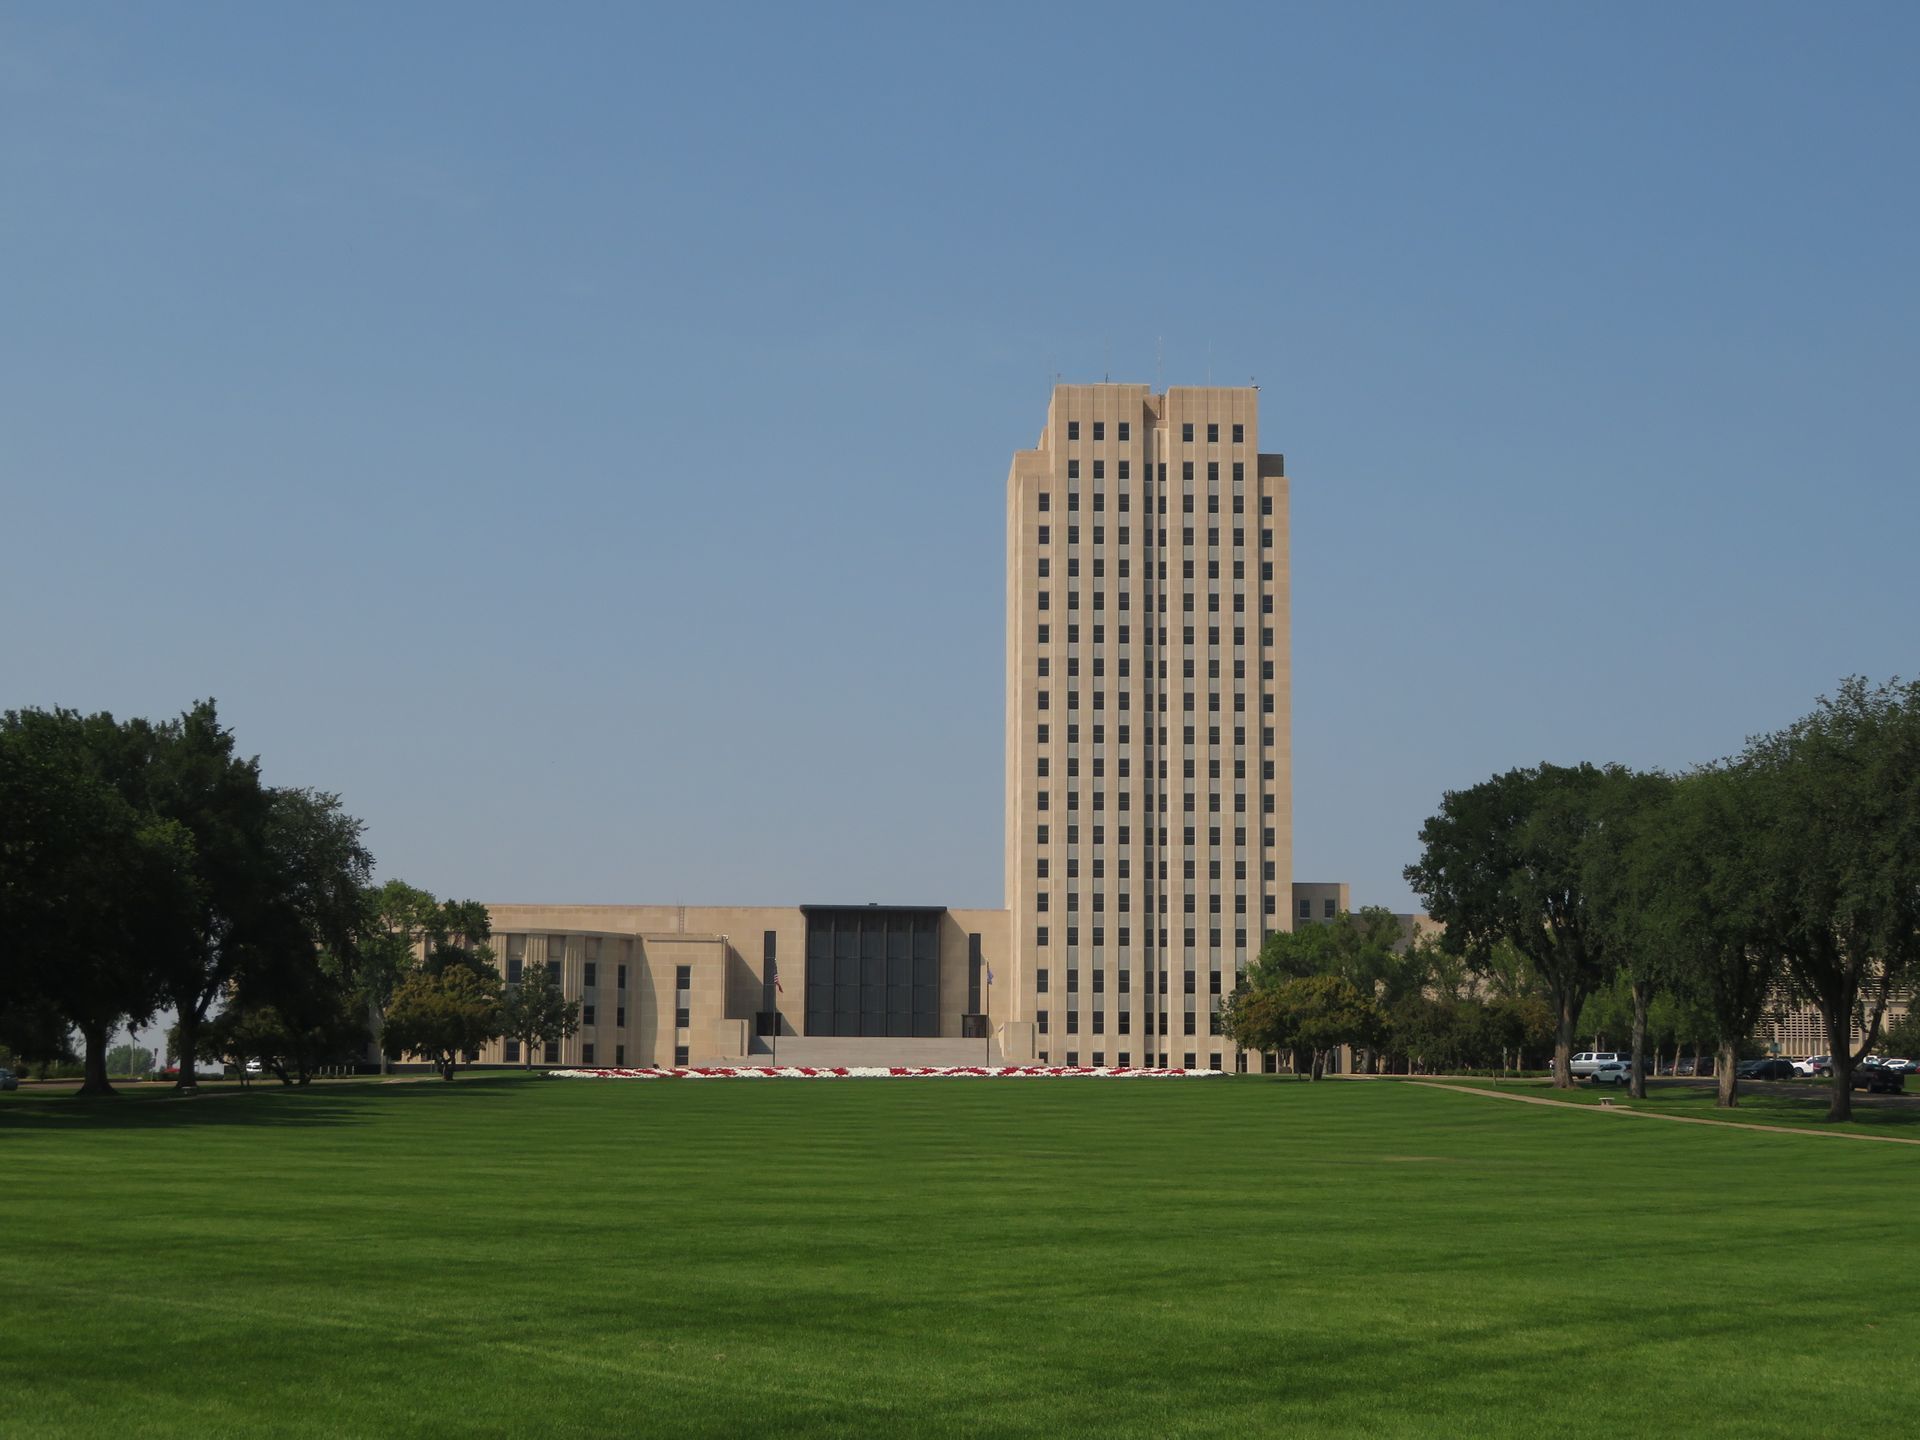 North Dakota State Capitol, Bismarck, North Dakota